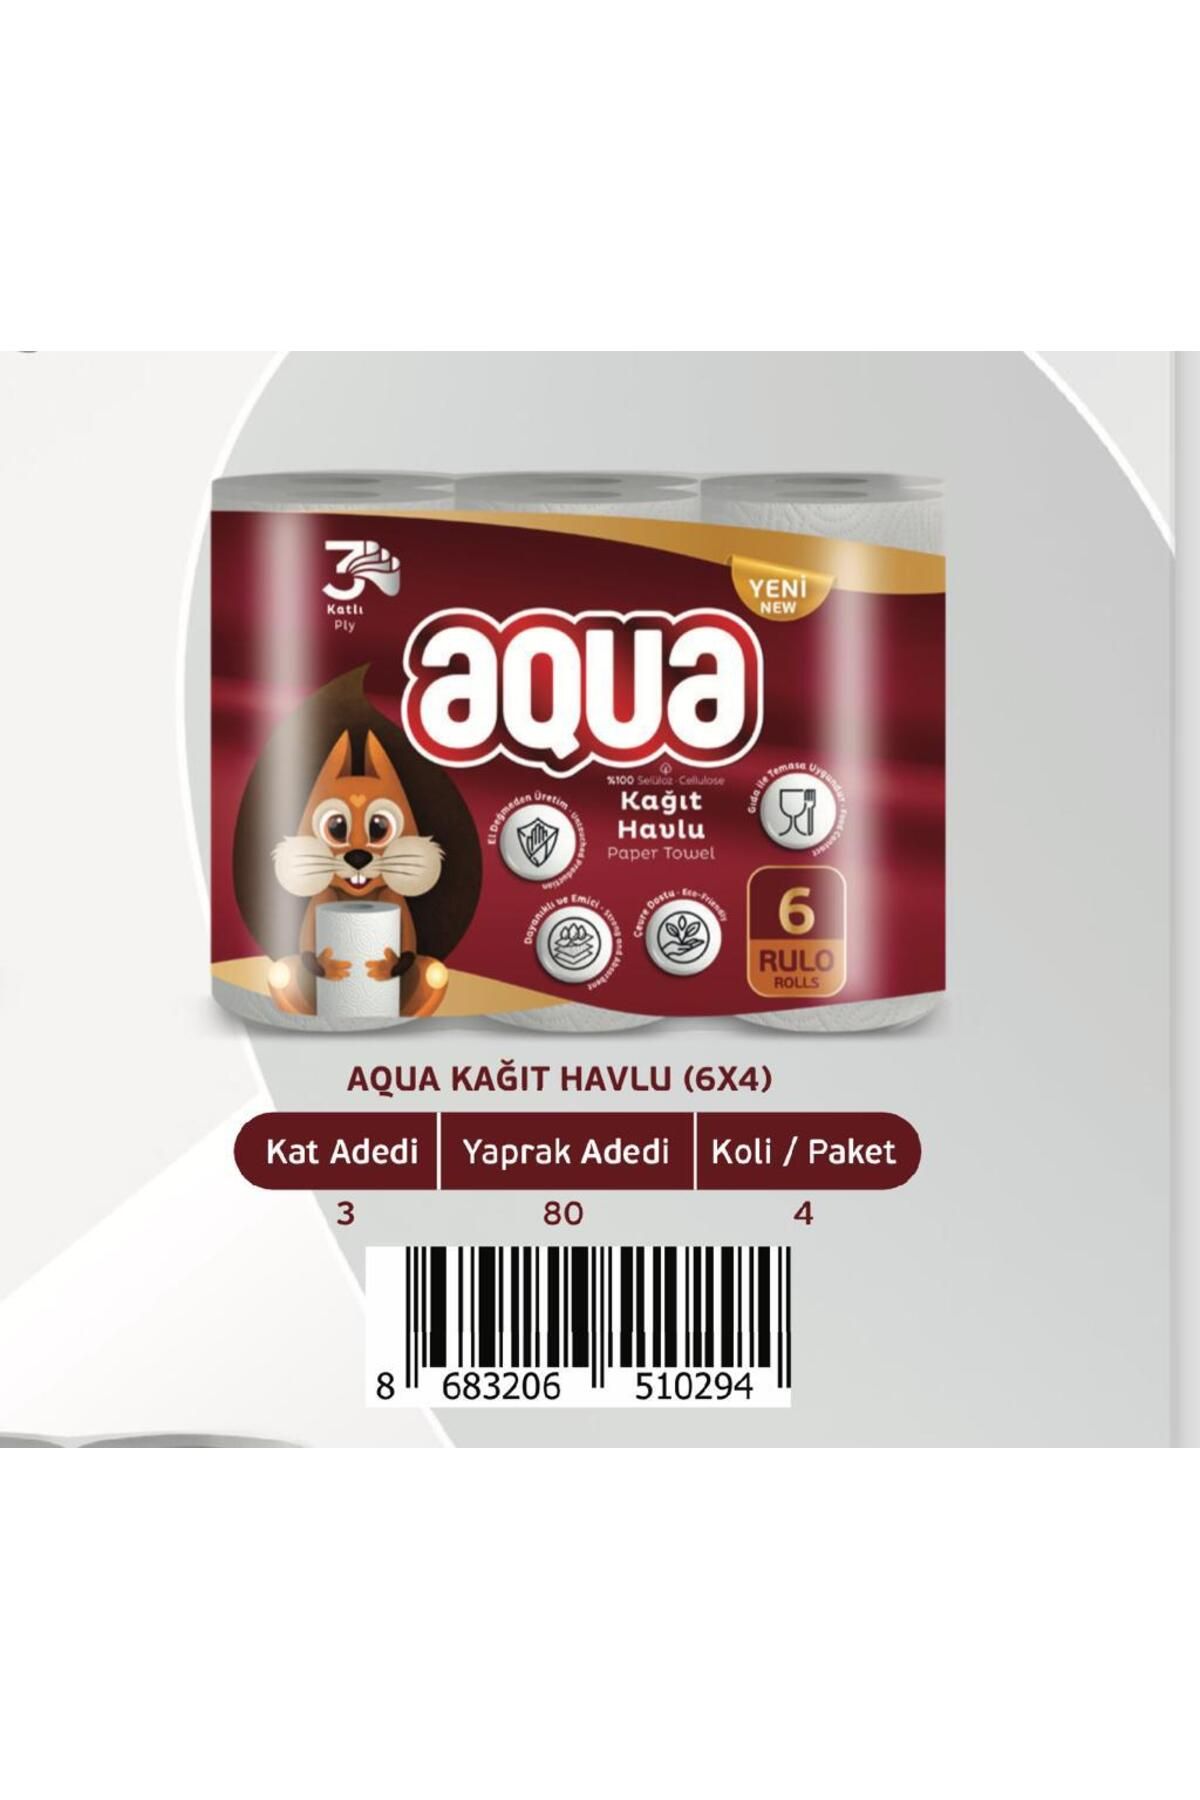 Aqua Rulo Kağıt Havlu 6'lı 3 Katlı